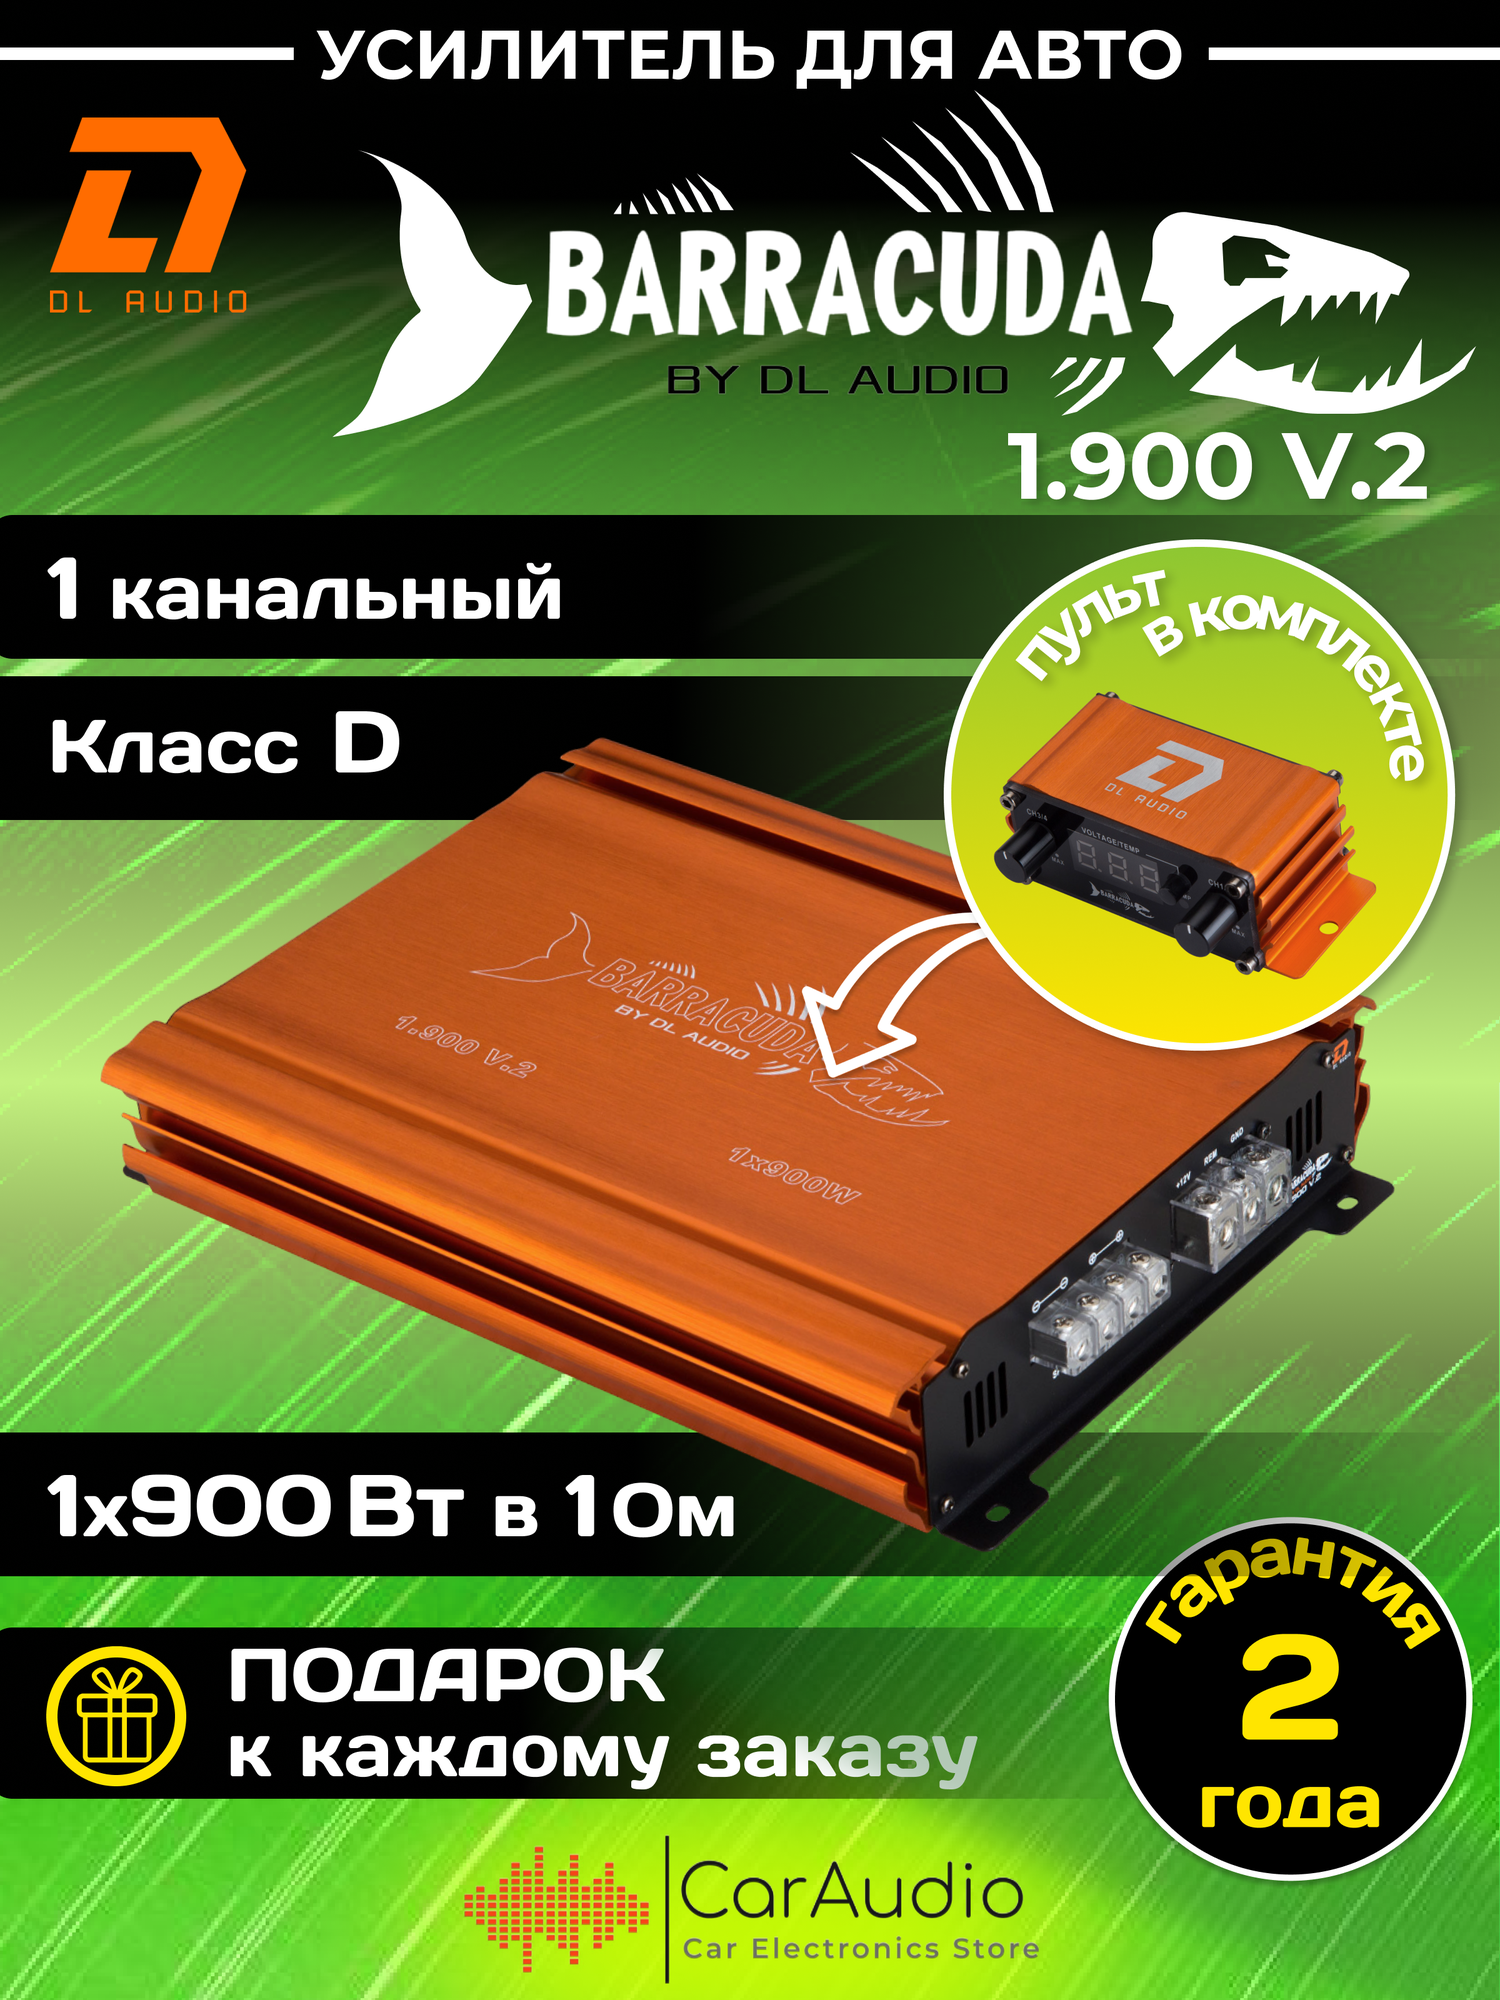 Автомобильный усилитель DL Audio Barracuda 1.900 V.2